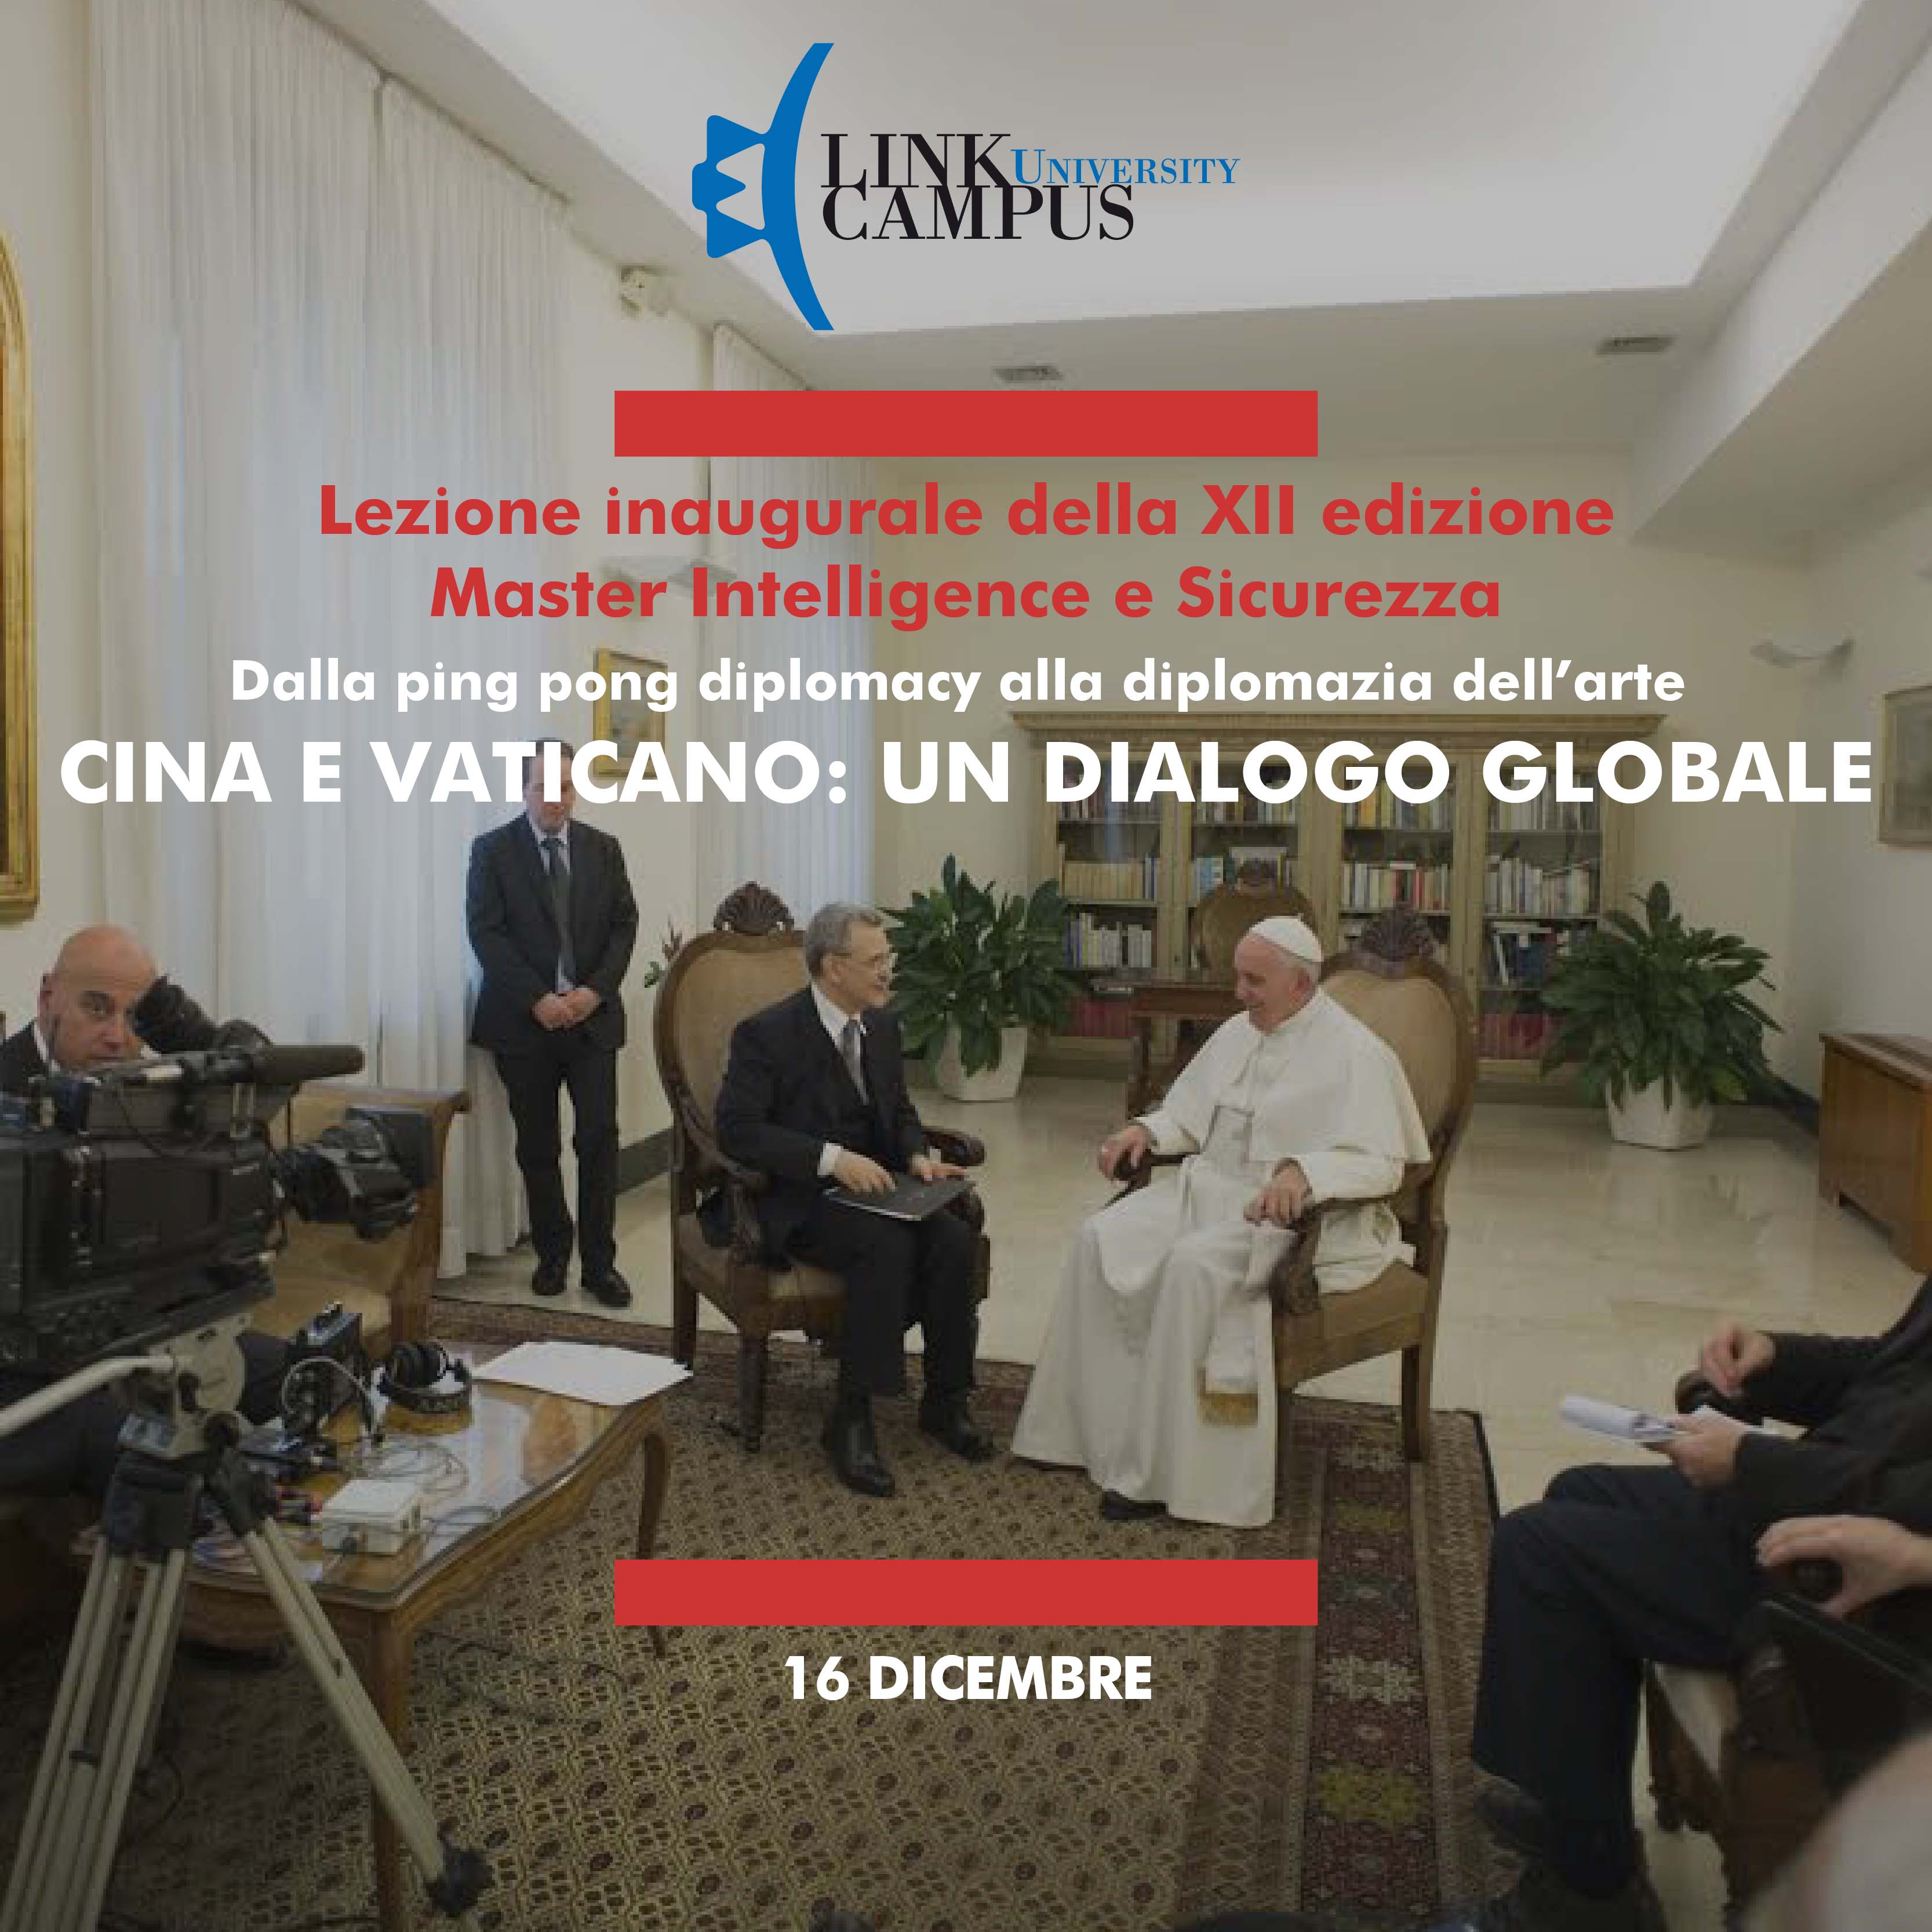 Cina e Vaticano: un dialogo globale